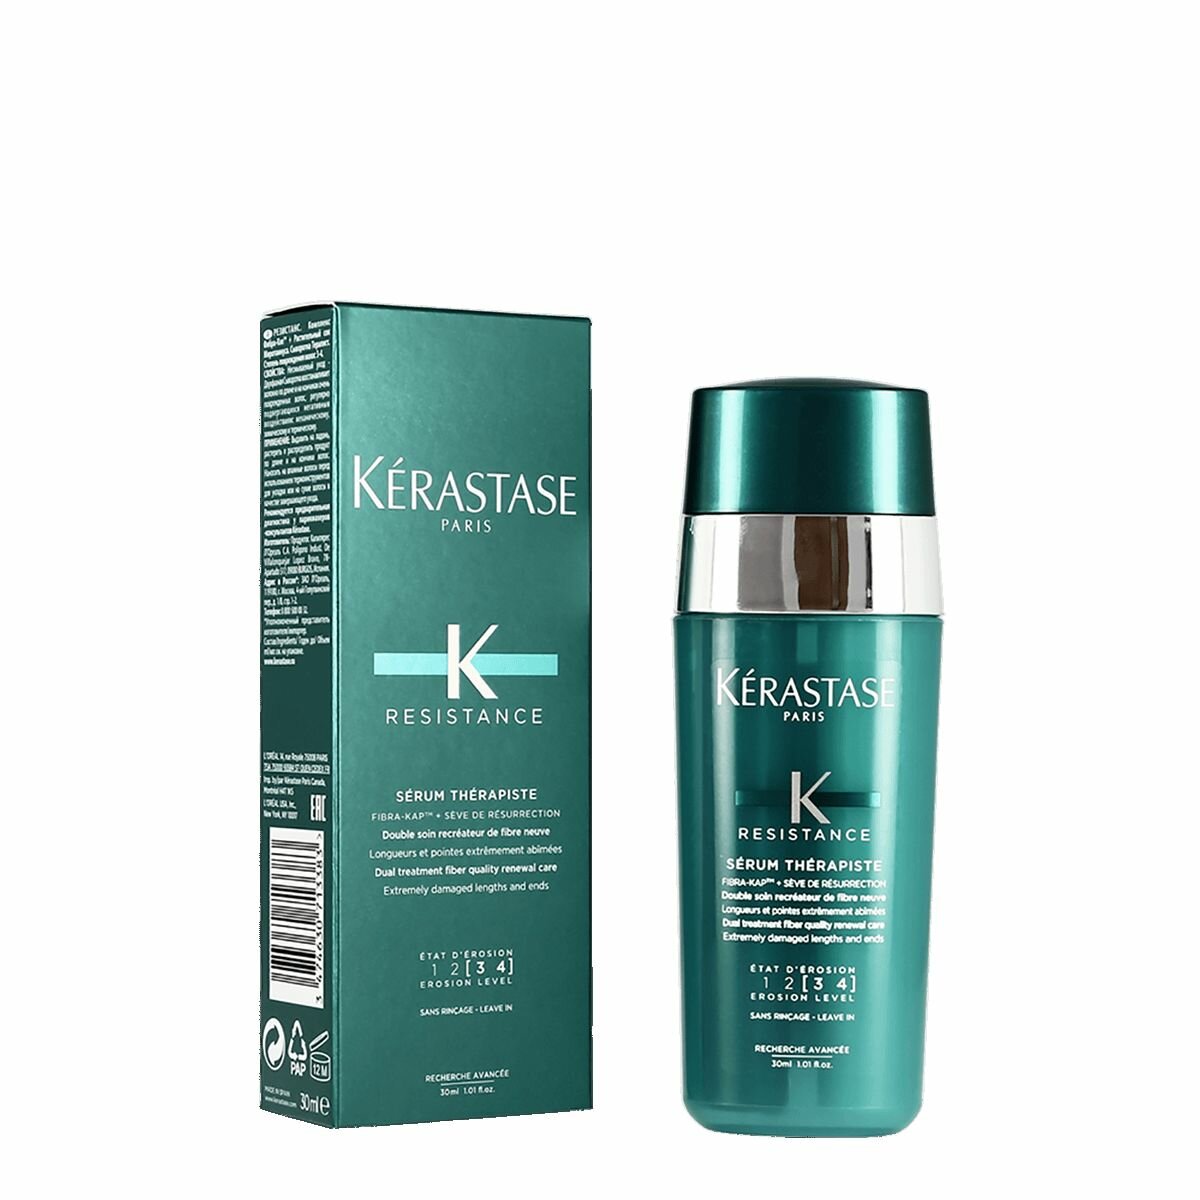 Kerastase Resistance Serum Therapiste Двухфазная восстанавливающая сыворотка для поврежденных волос, 30 мл, бутылка